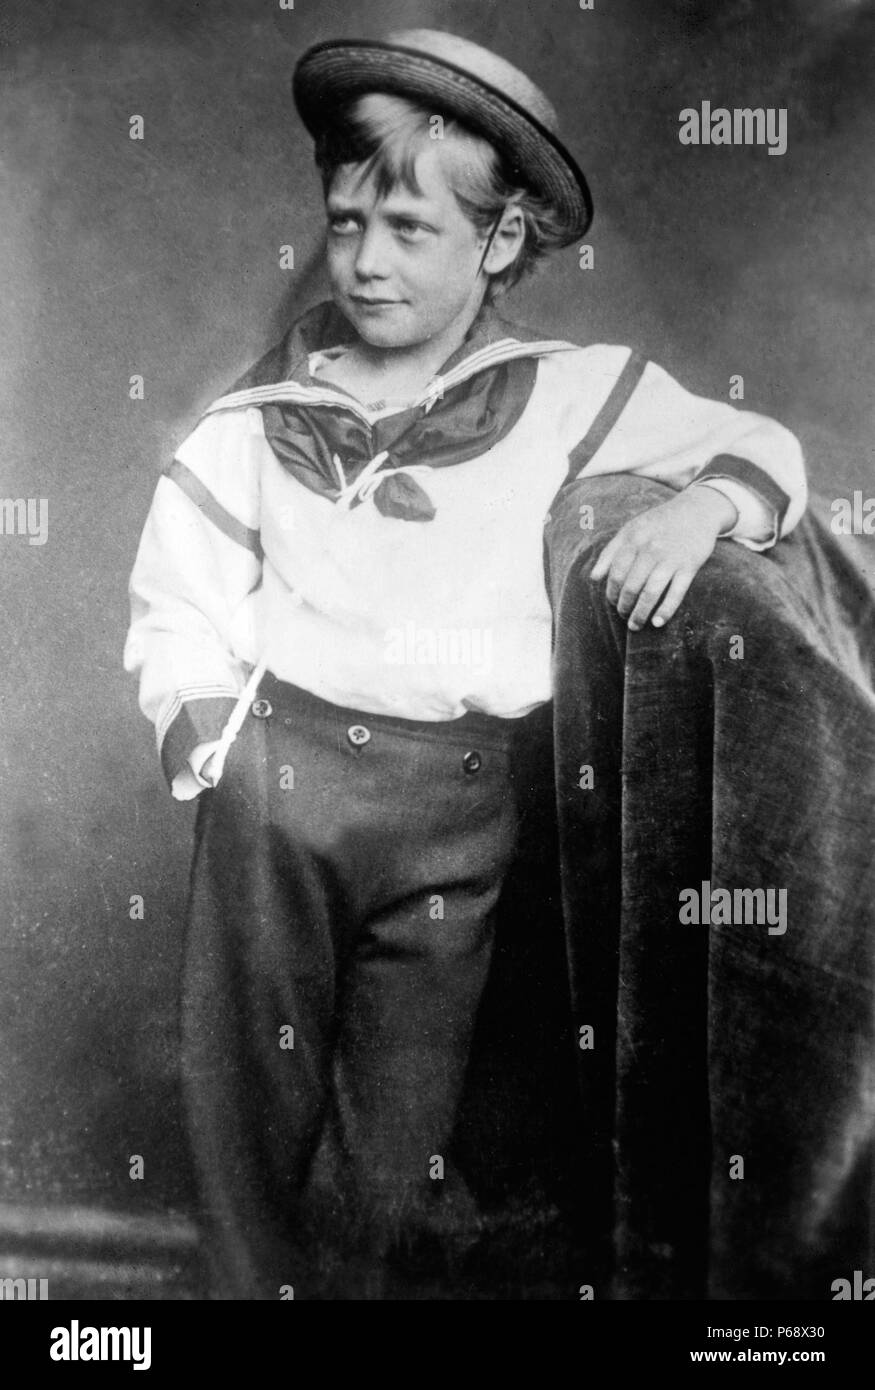 Photographie d'un jeune roi George V (1865-1936) Roi du Royaume-Uni et empereur des Indes. Datée 1870 Banque D'Images